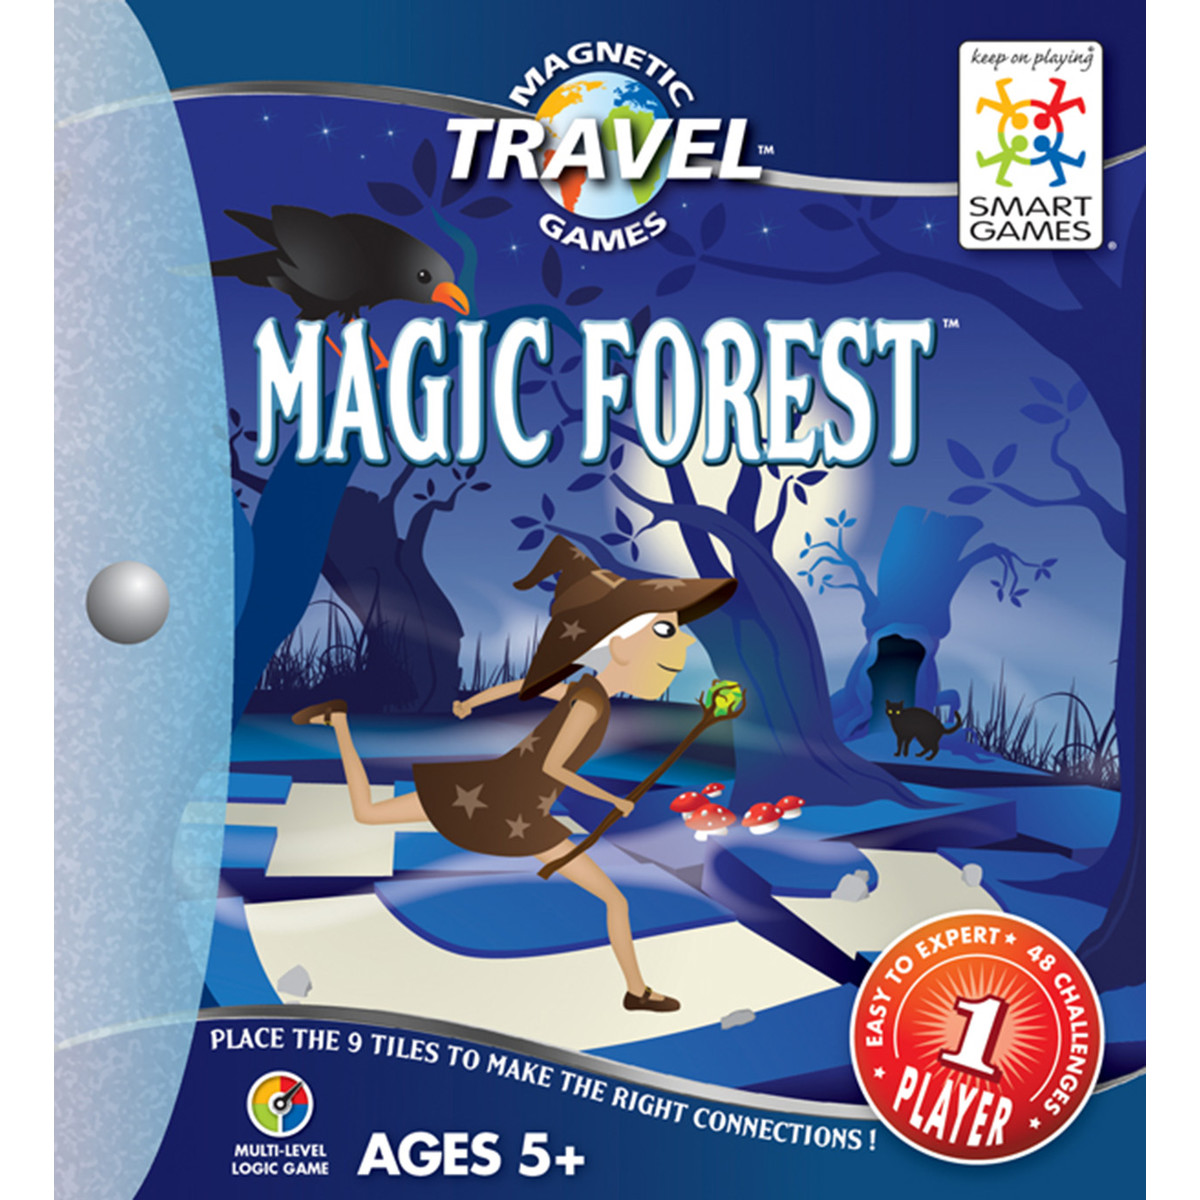 Magic Forest. Padurea magica